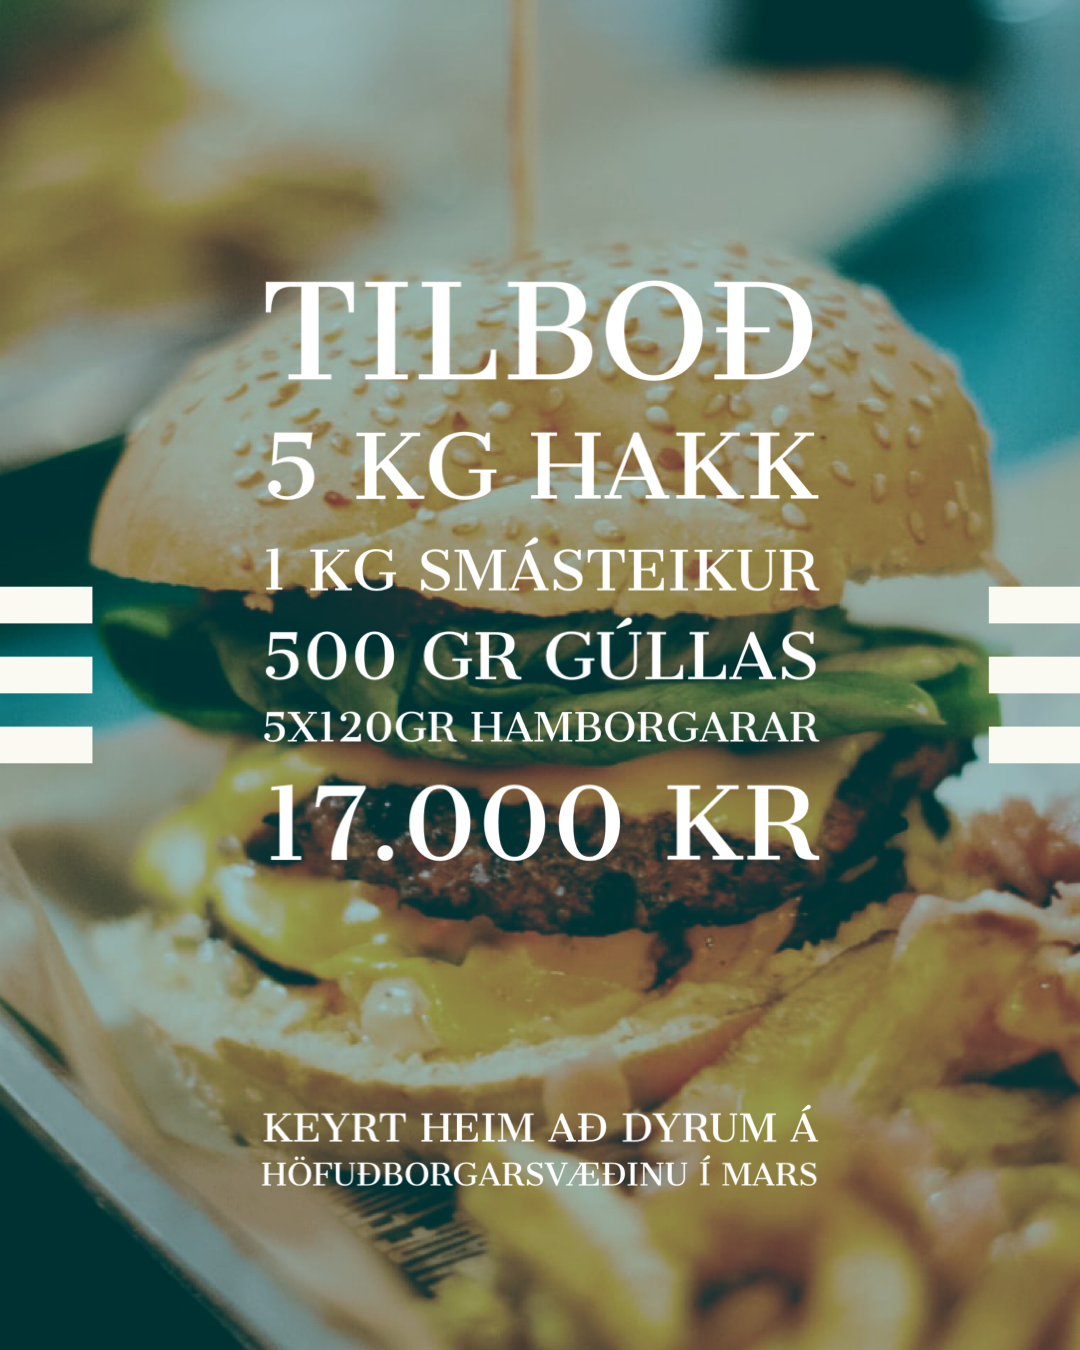 Tilboðspakki til Reykjavíkur 18.apríl, fjölbreyttur pakki